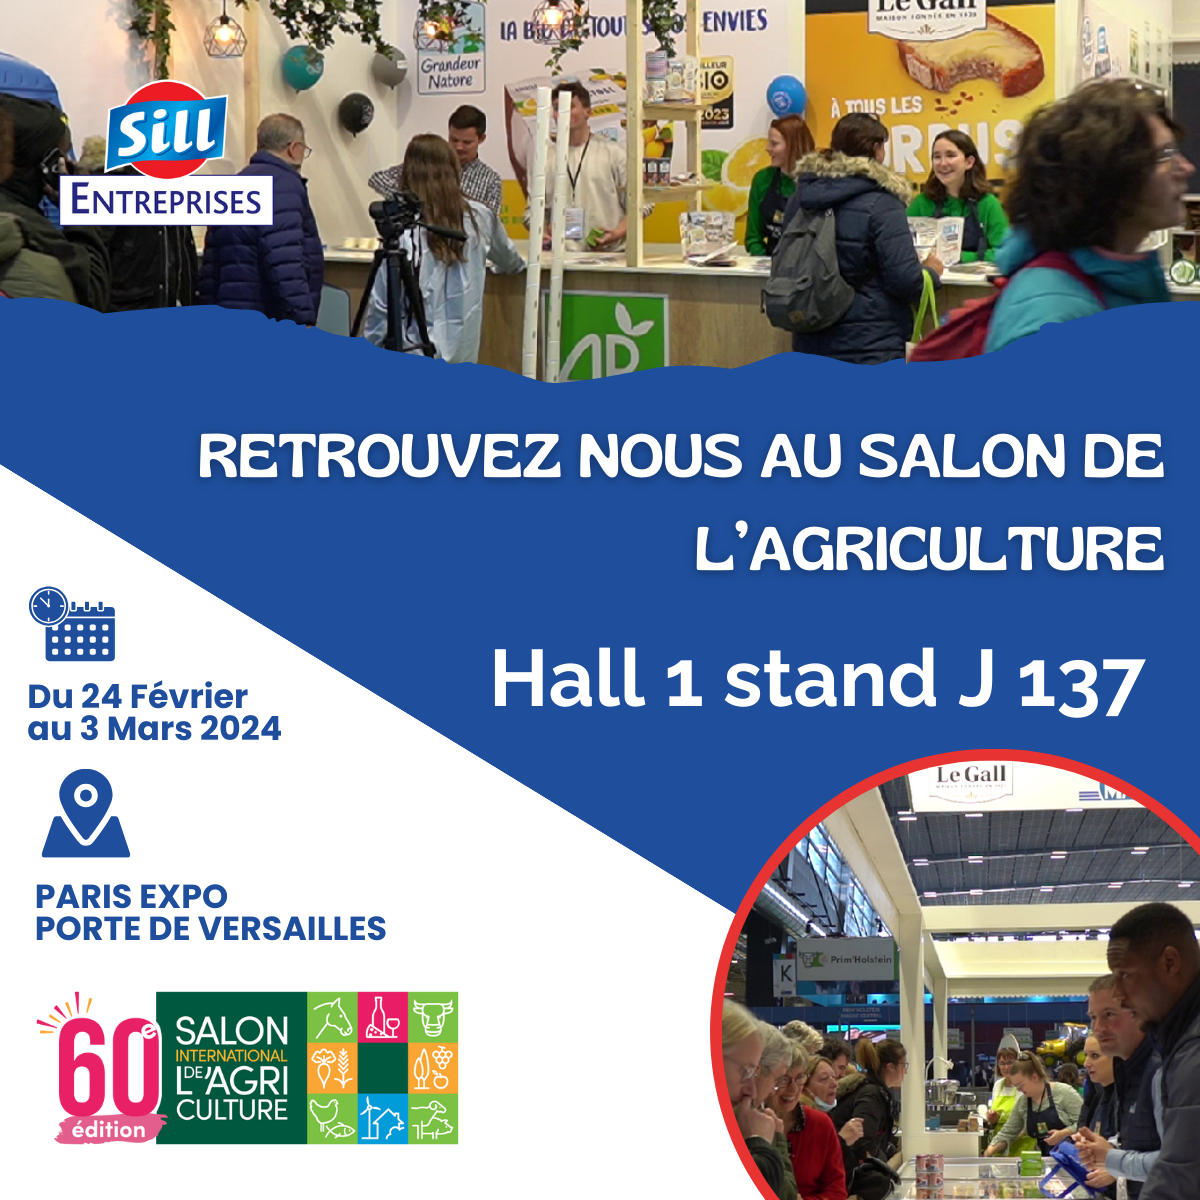 SILL Entreprises au Salon International de l’Agriculture à Paris !